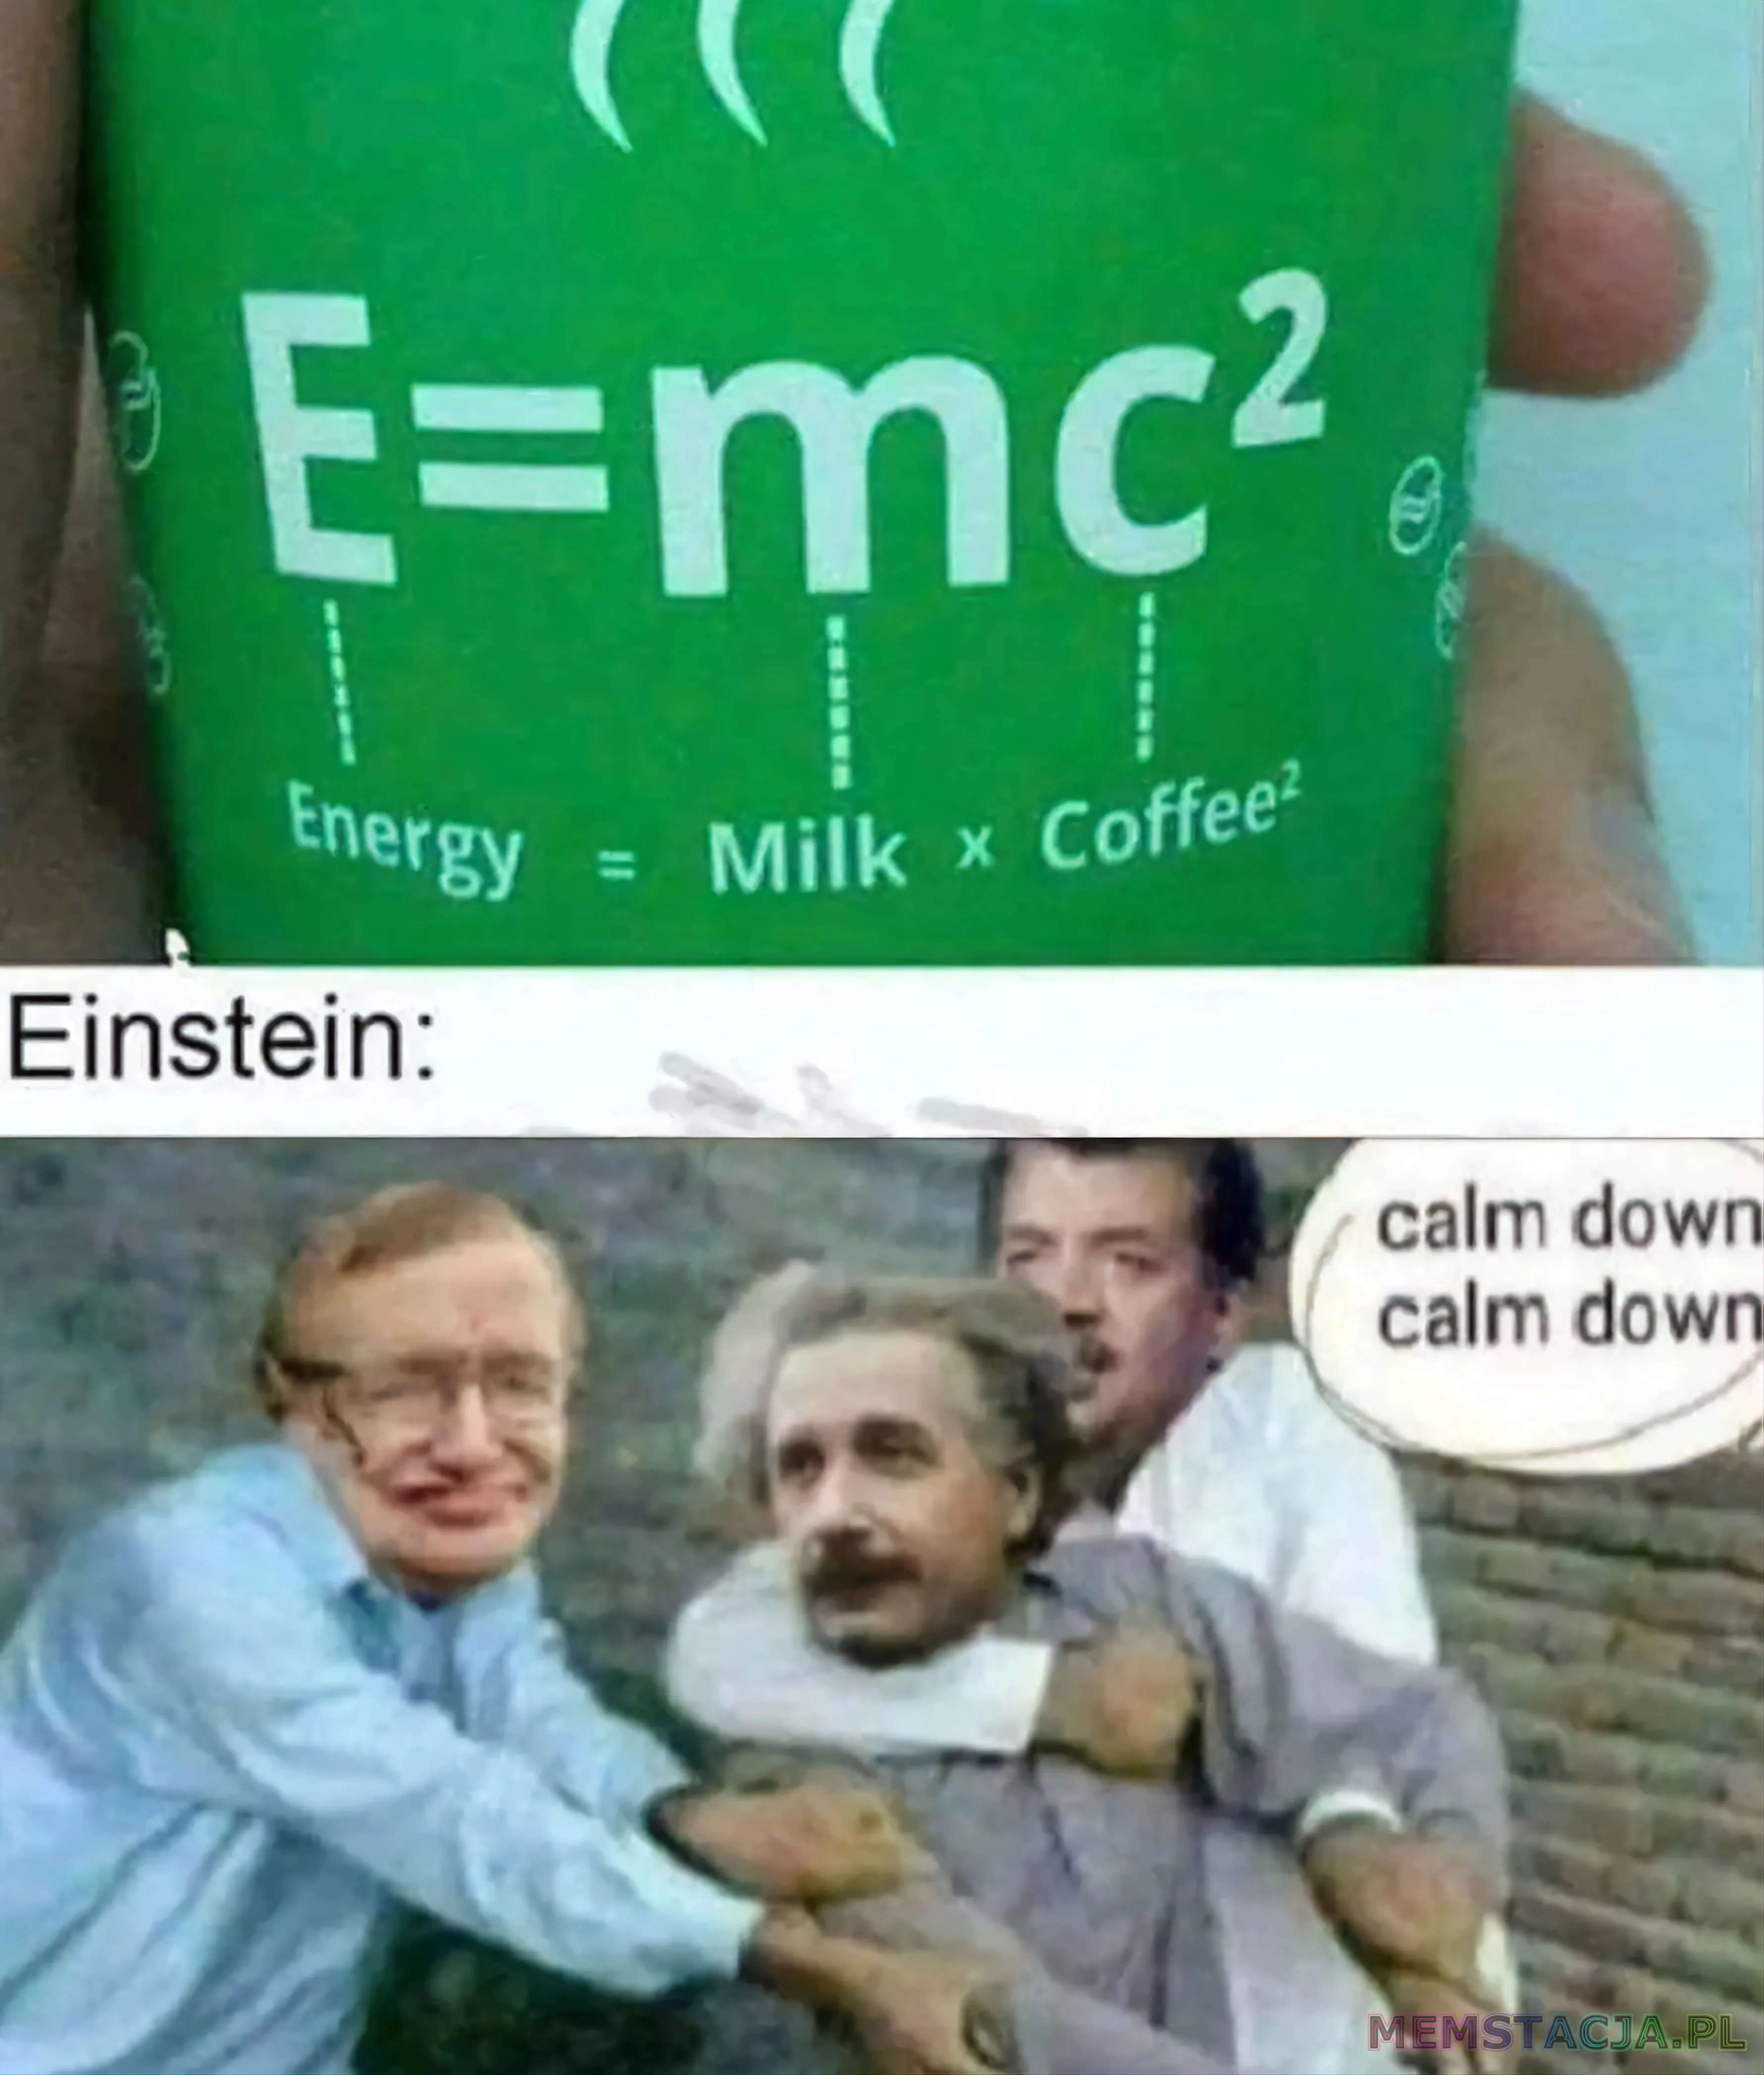 Mem przedstawiający napój energetyczny (gdzie E=mc2 to Energy = Milk × Coffee²) i naukowców fizyki trzymających Alberta Einsteina, którzy mówią do niego "calm down calm down"